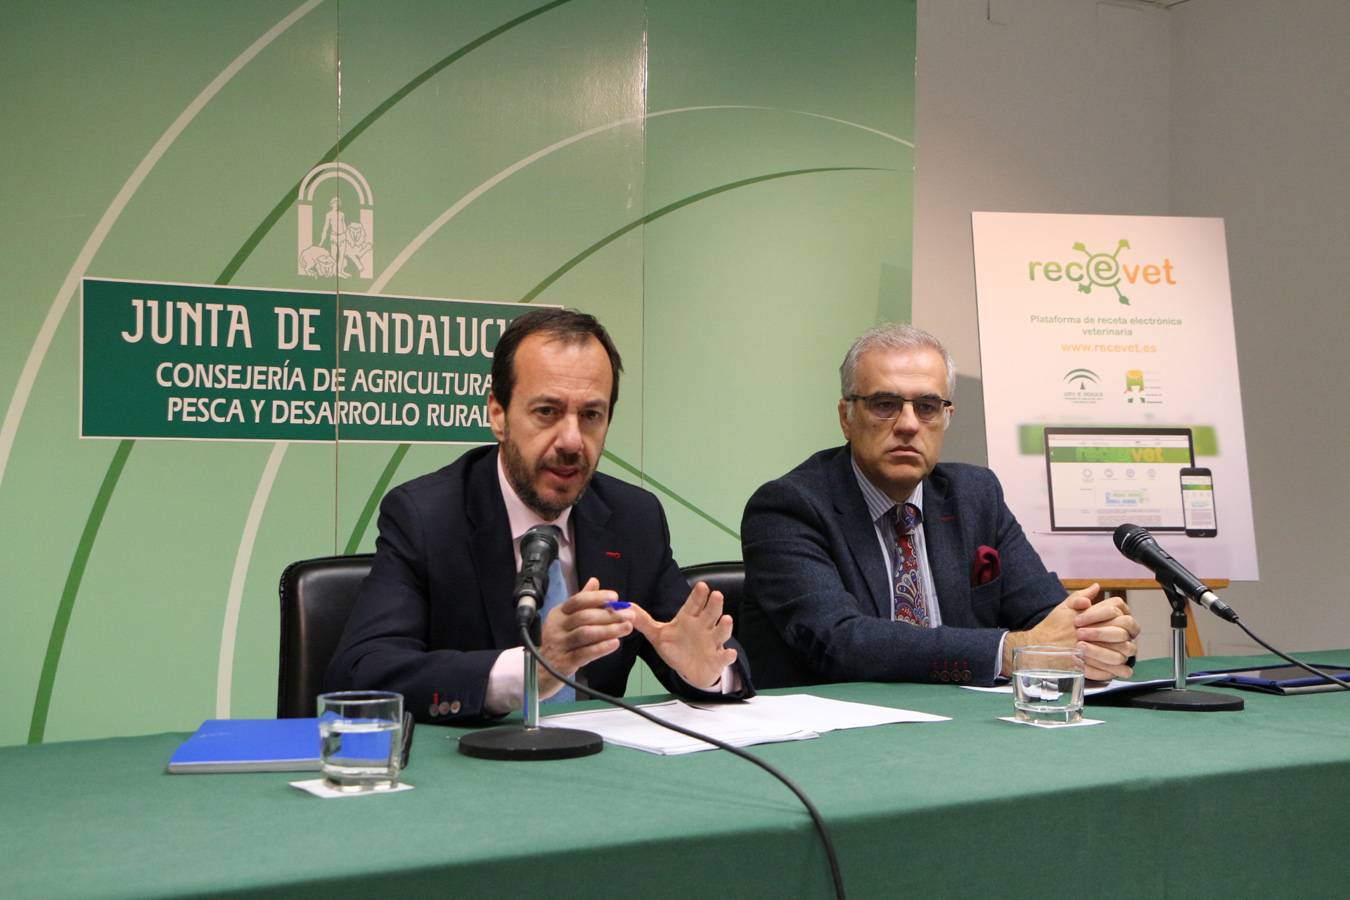 En Andalucía se emitieron 73.000 recetas electrónicas desde su implantación a principios de 2016 